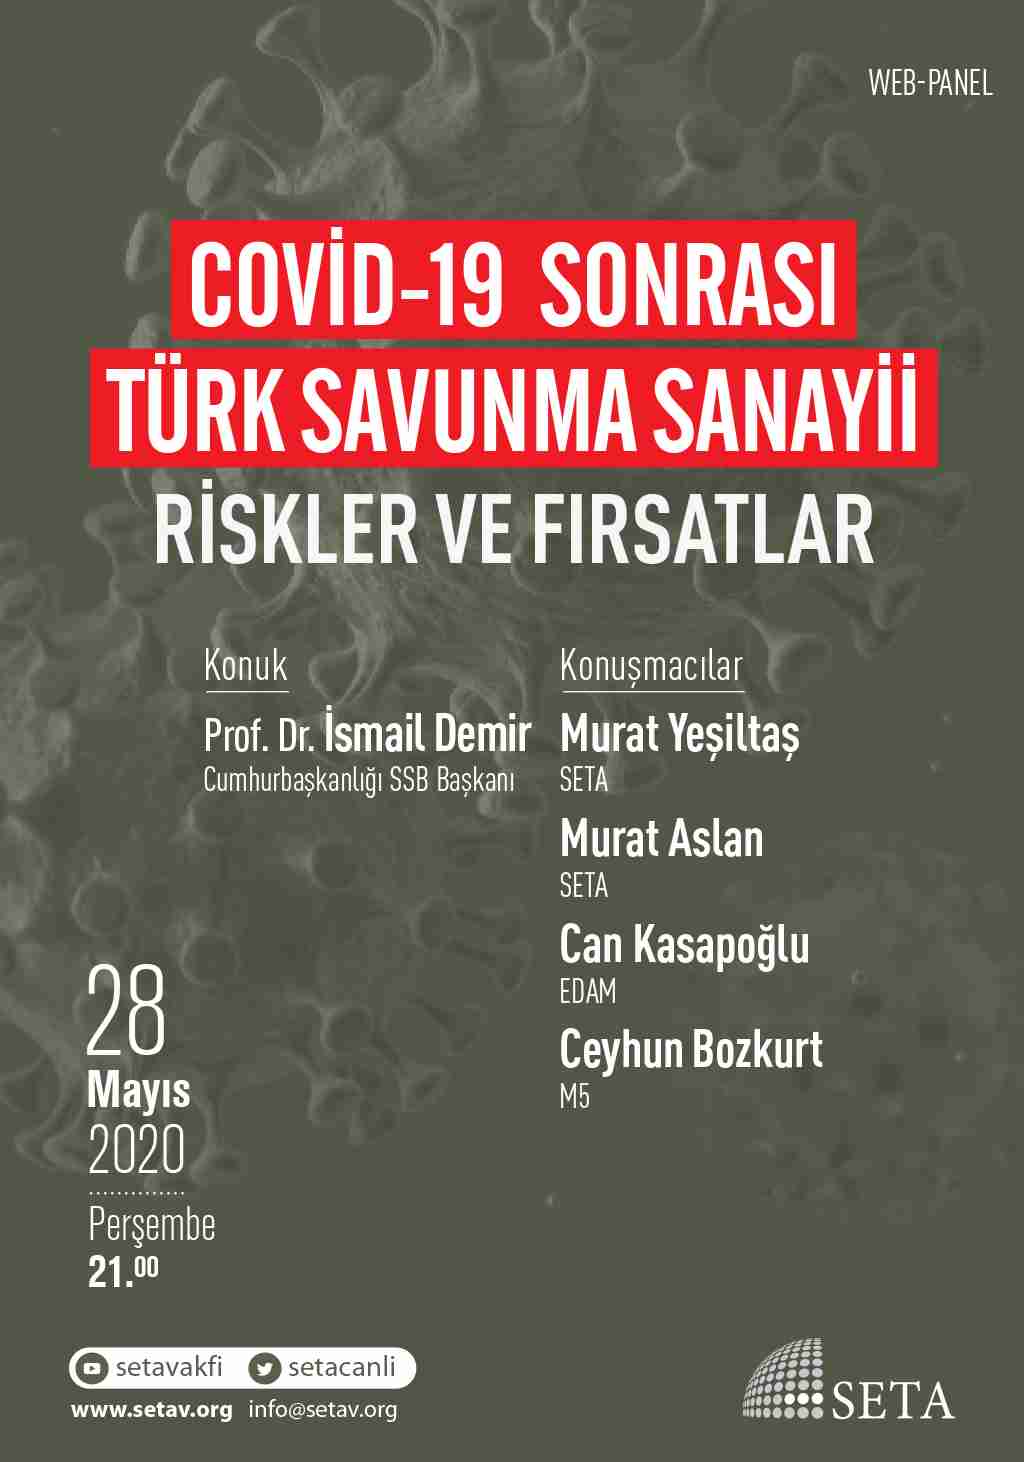 COVID-19 Sonrası Türk Savunma Sanayii - Riskler ve Fırsatlar paneli